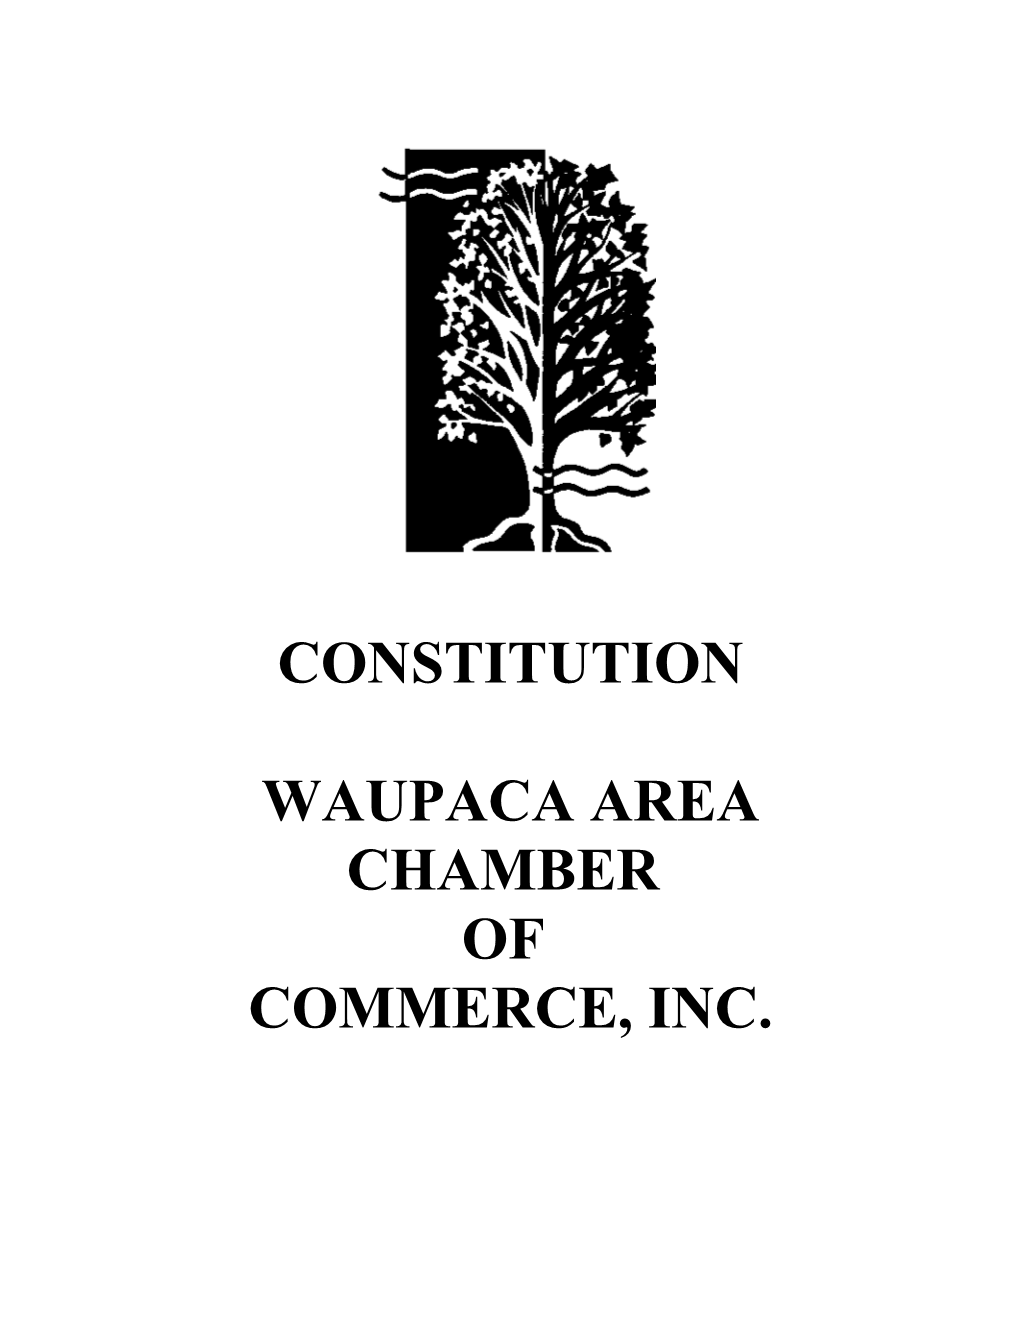 Waupaca Area Chamber of Commerce, Inc